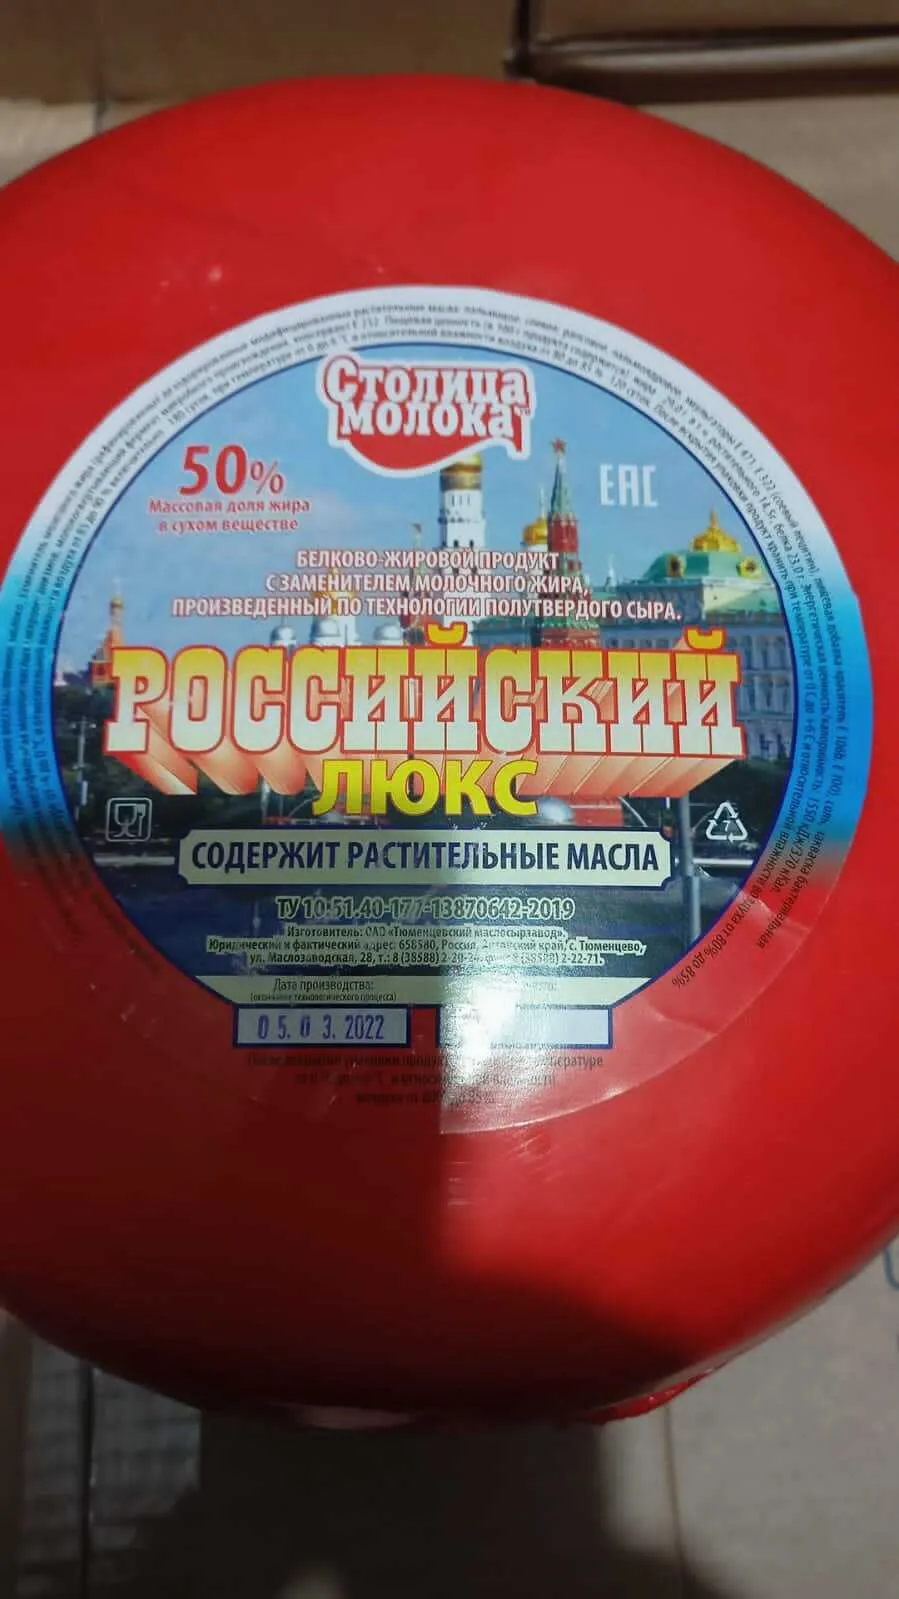 сыр, сырный продукт в Москве опт.цены в Москве 2